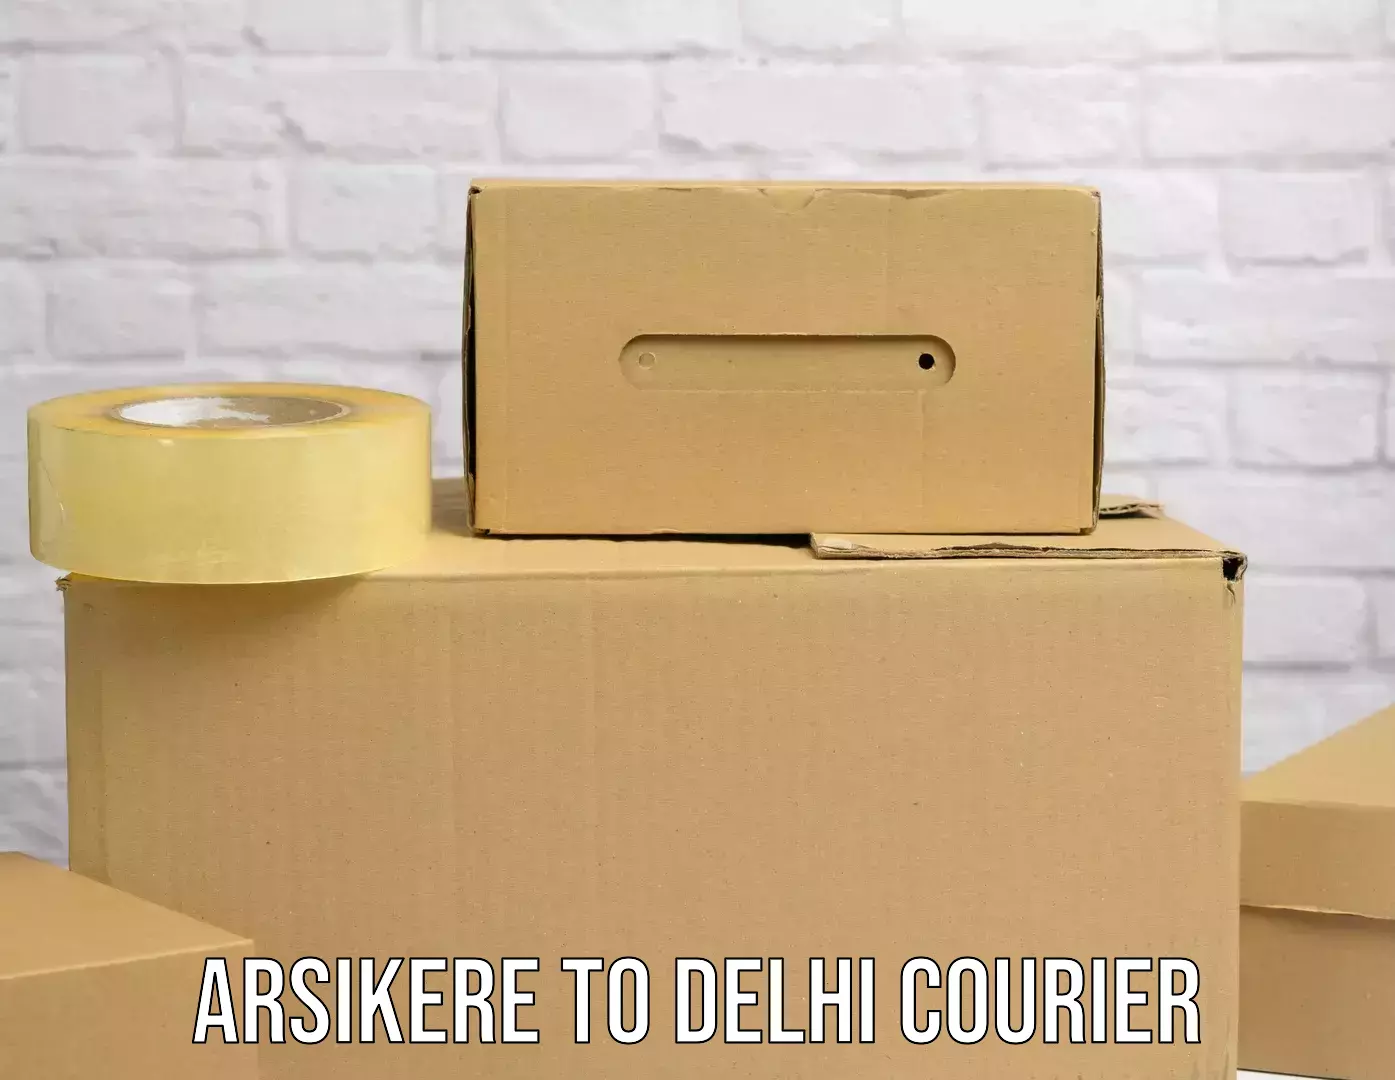 Express logistics Arsikere to Delhi